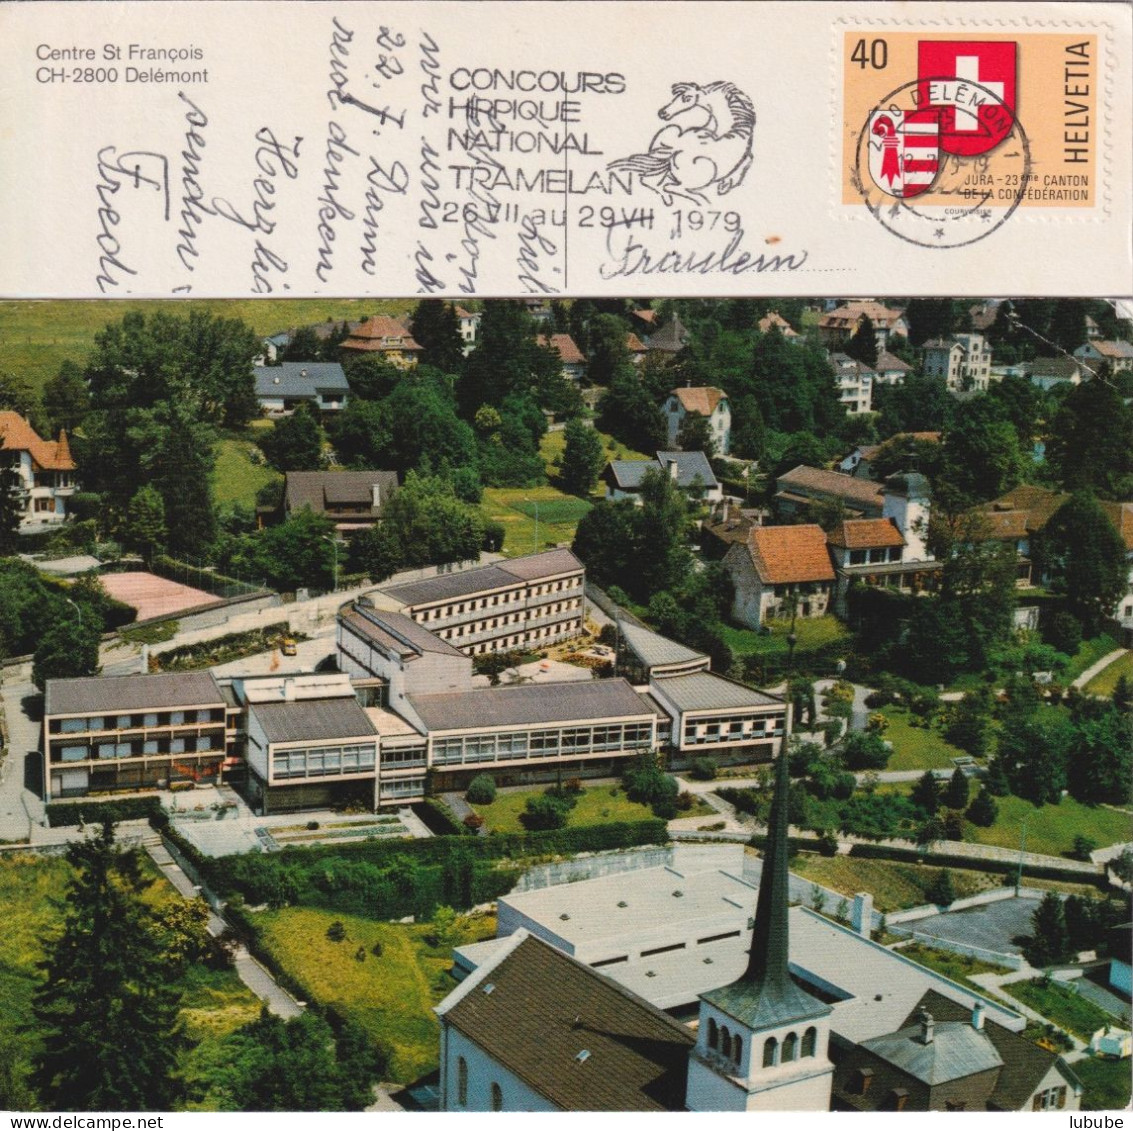 Delémont - Centre St-François  (Flaggen "Concours Hippique" - 2 Karten)      1976/79 - Delémont